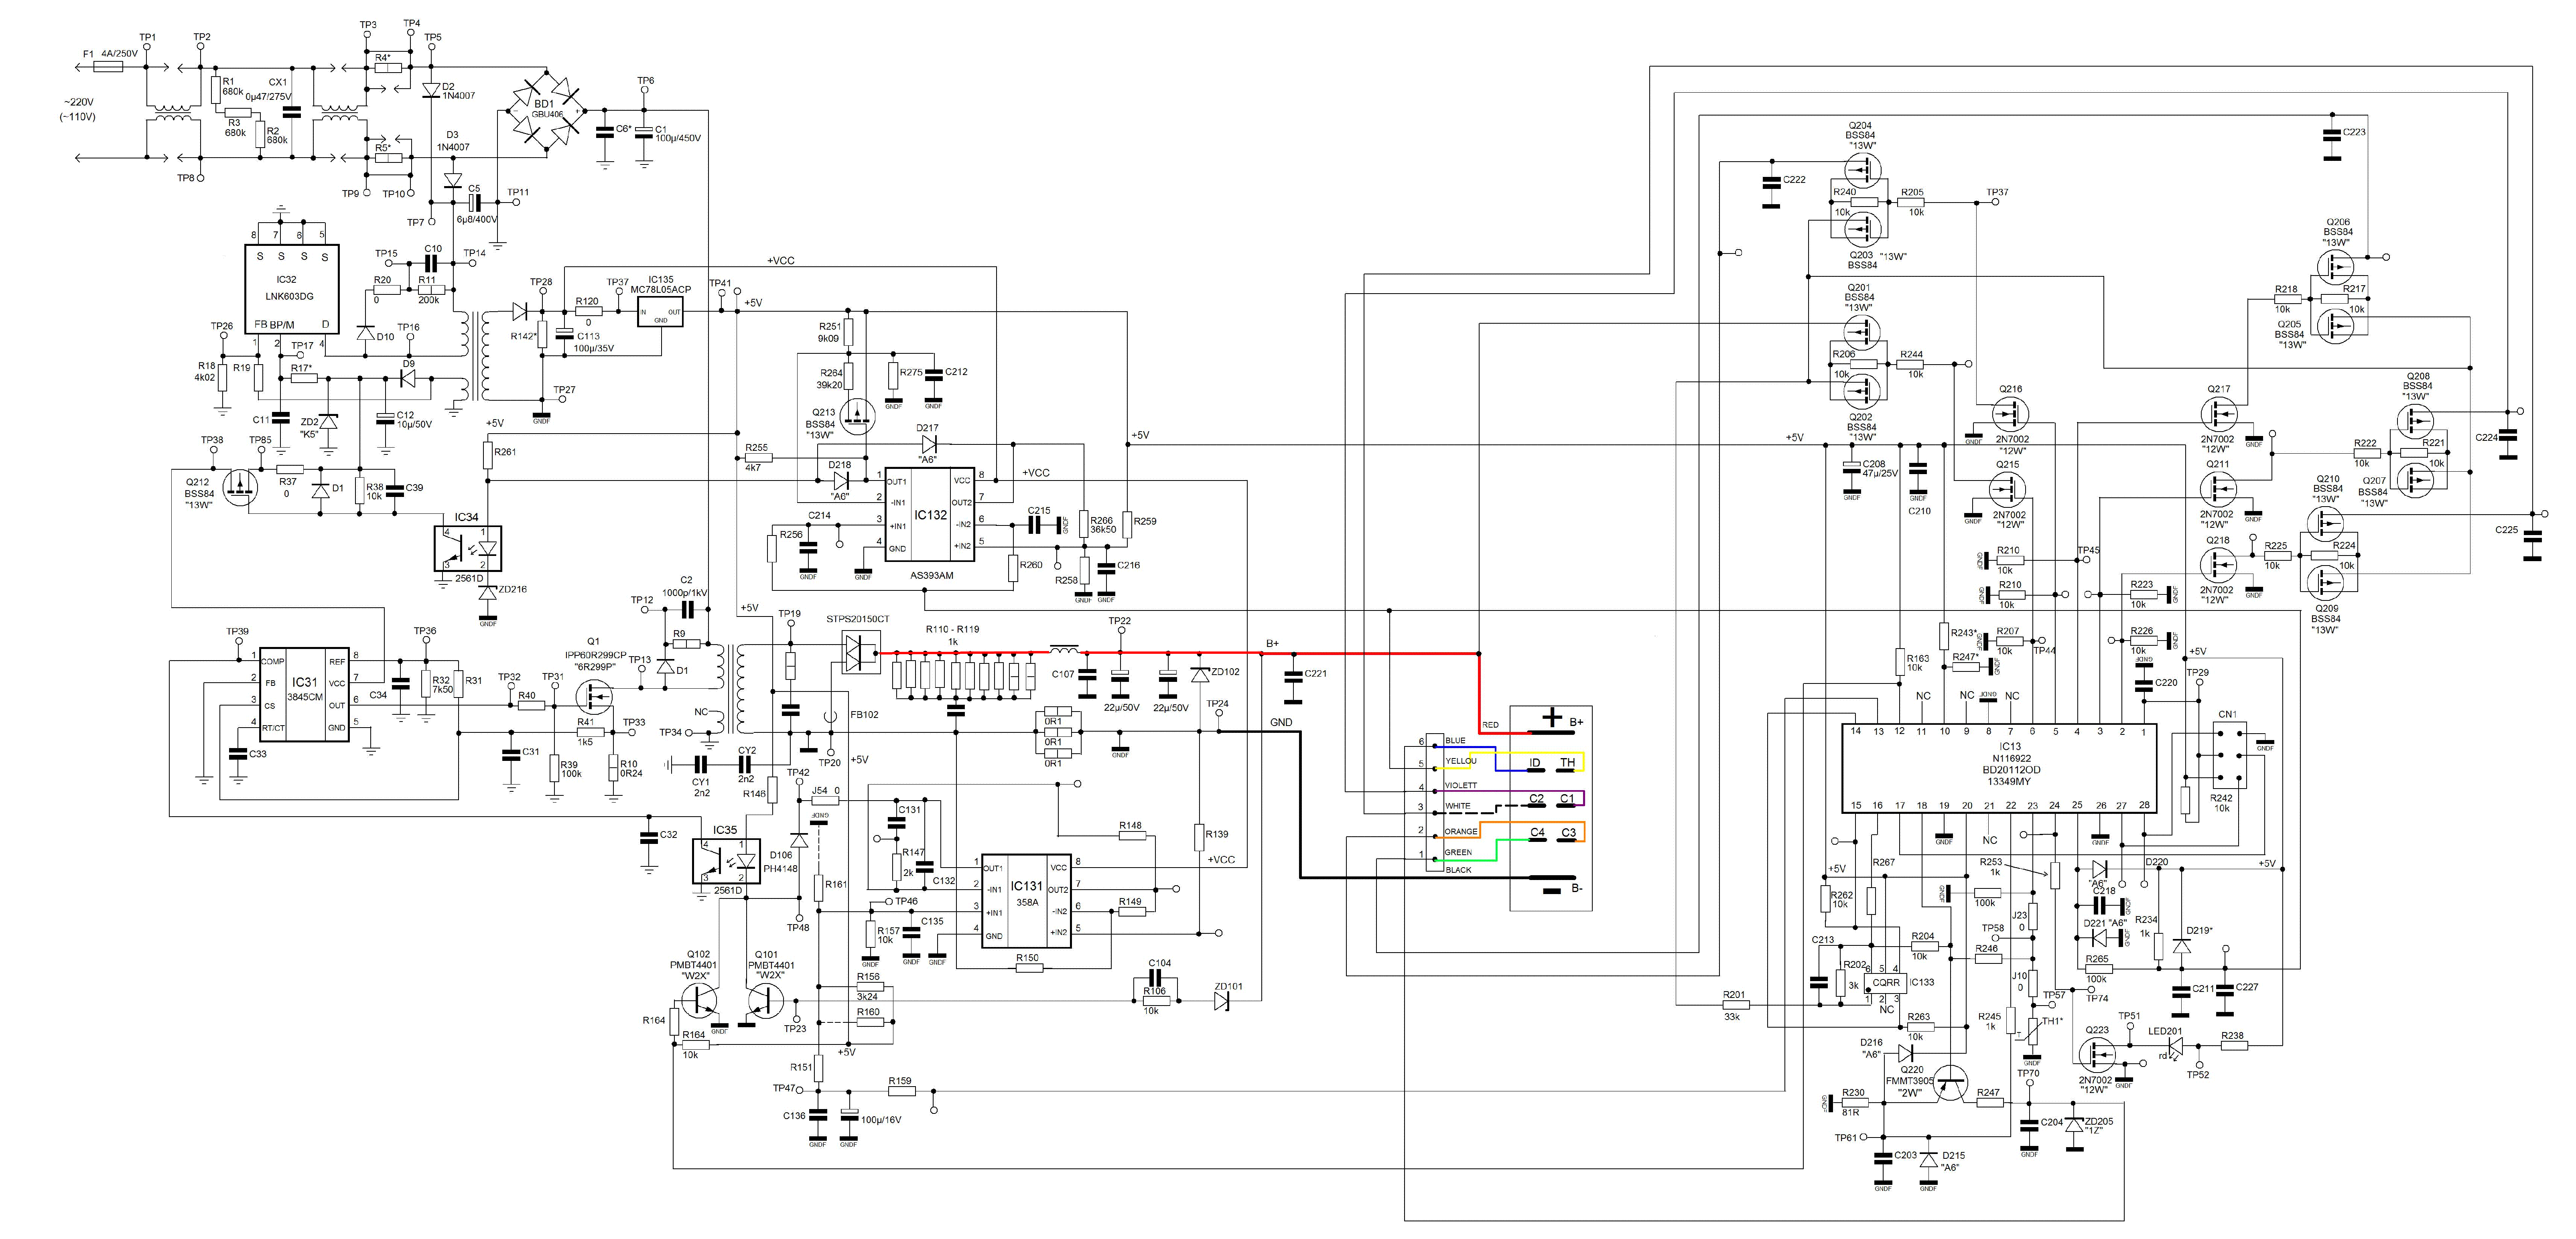 Dewalt dcb105 schematic